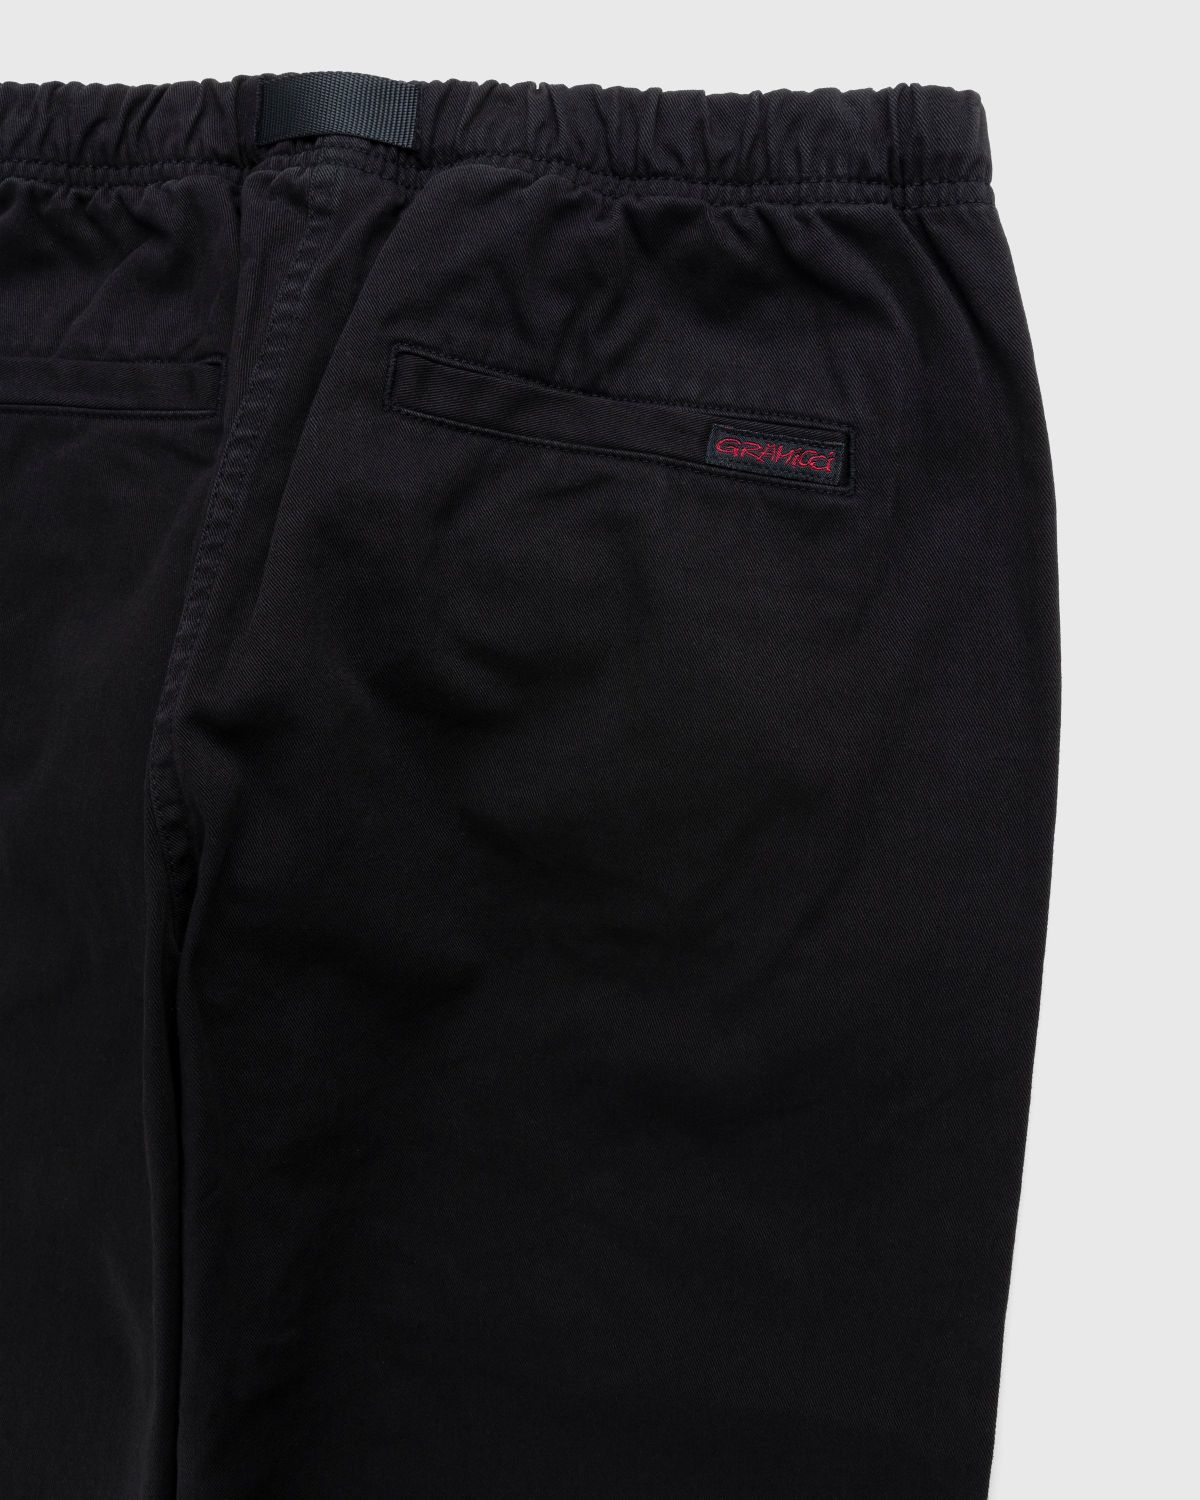 Gramicci – Gramicci Pant Black - Trousers - Black - Image 3